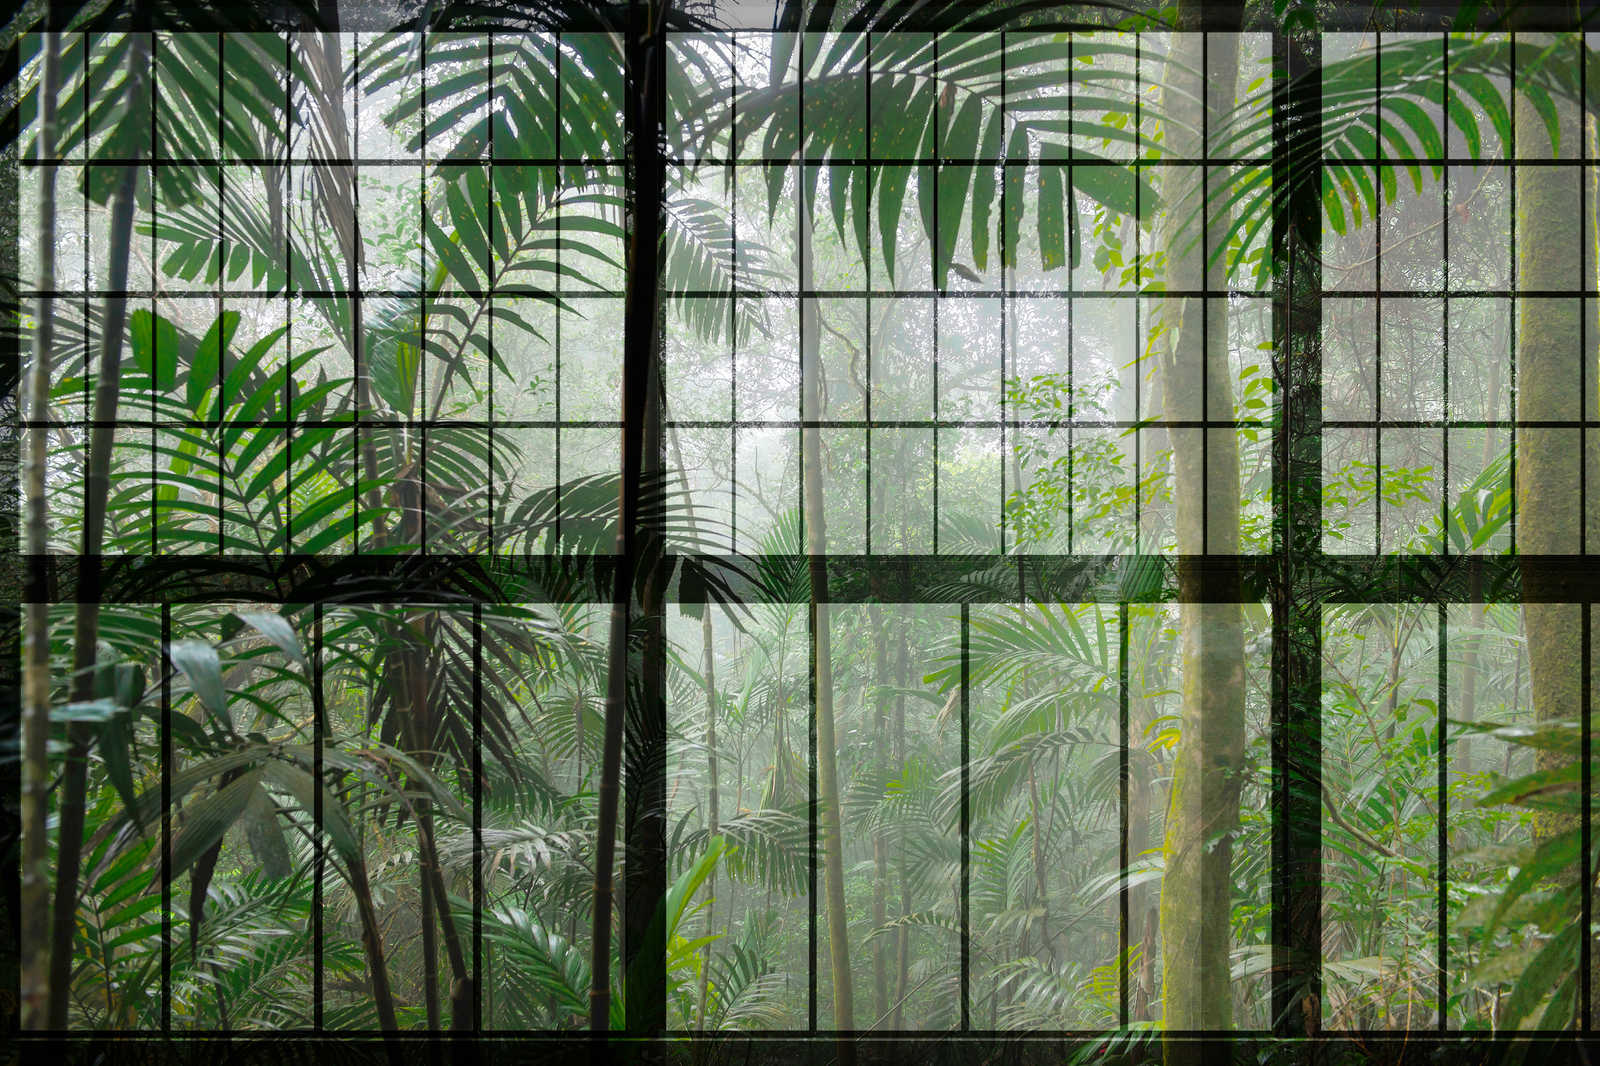             Rainforest 1 - Loft fenêtre toile avec vue sur la jungle - 0,90 m x 0,60 m
        